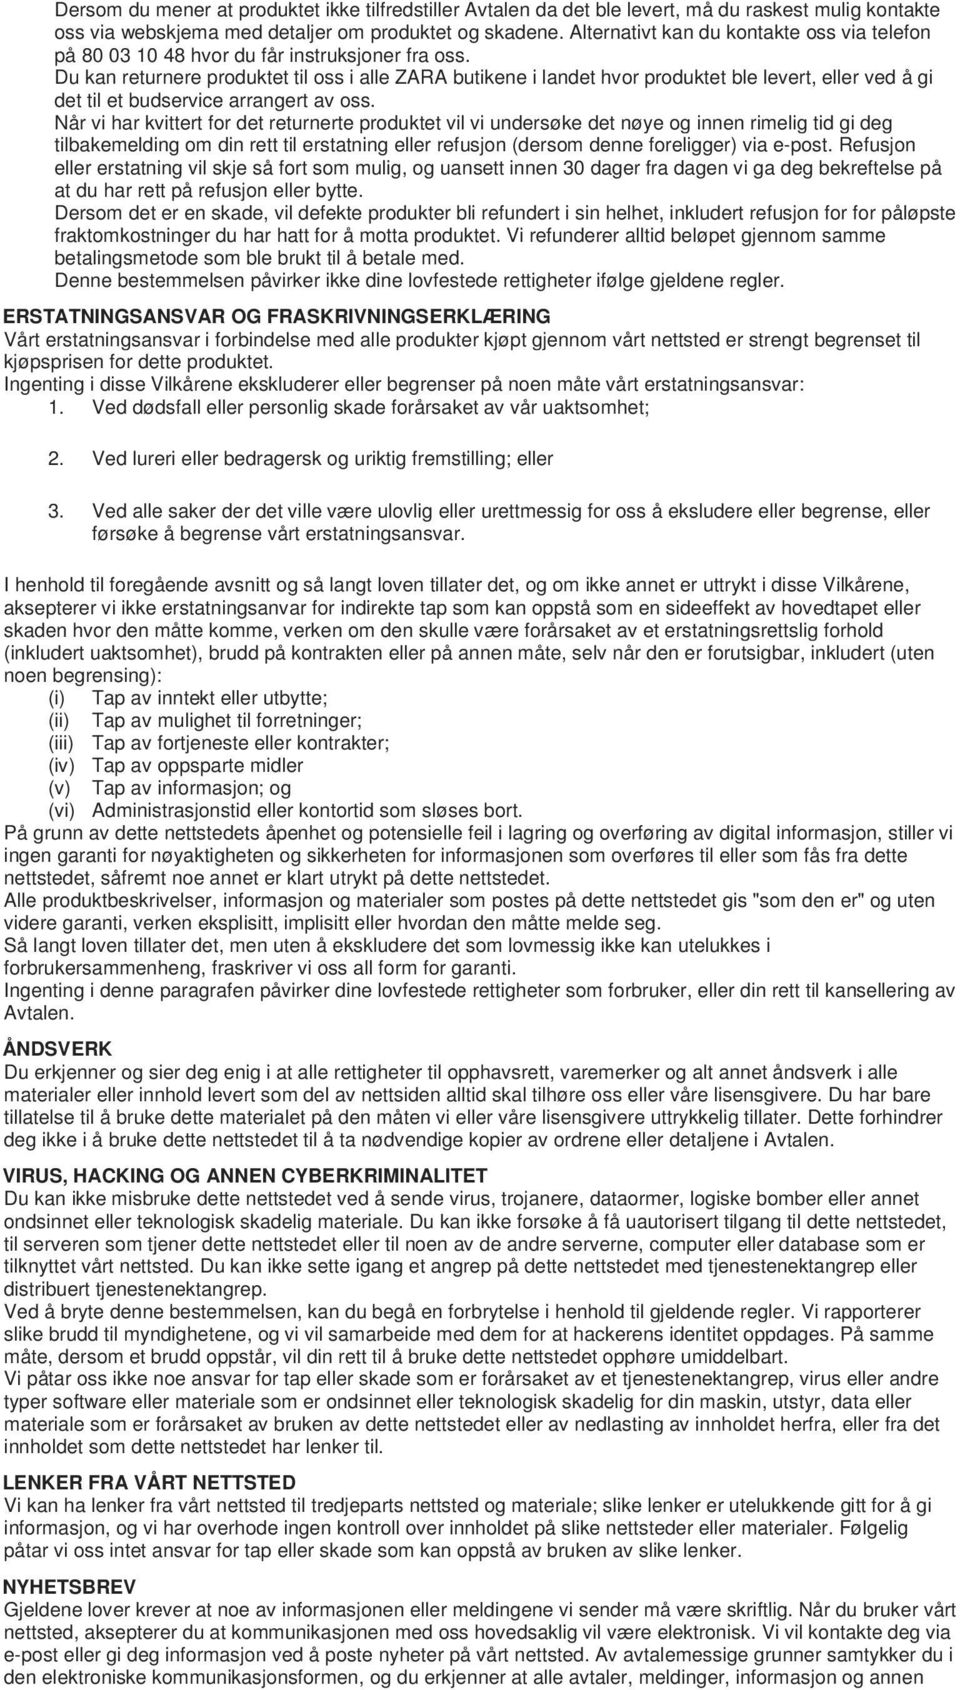 ZARA nettsted Vilkår & Betingelser - PDF Free Download